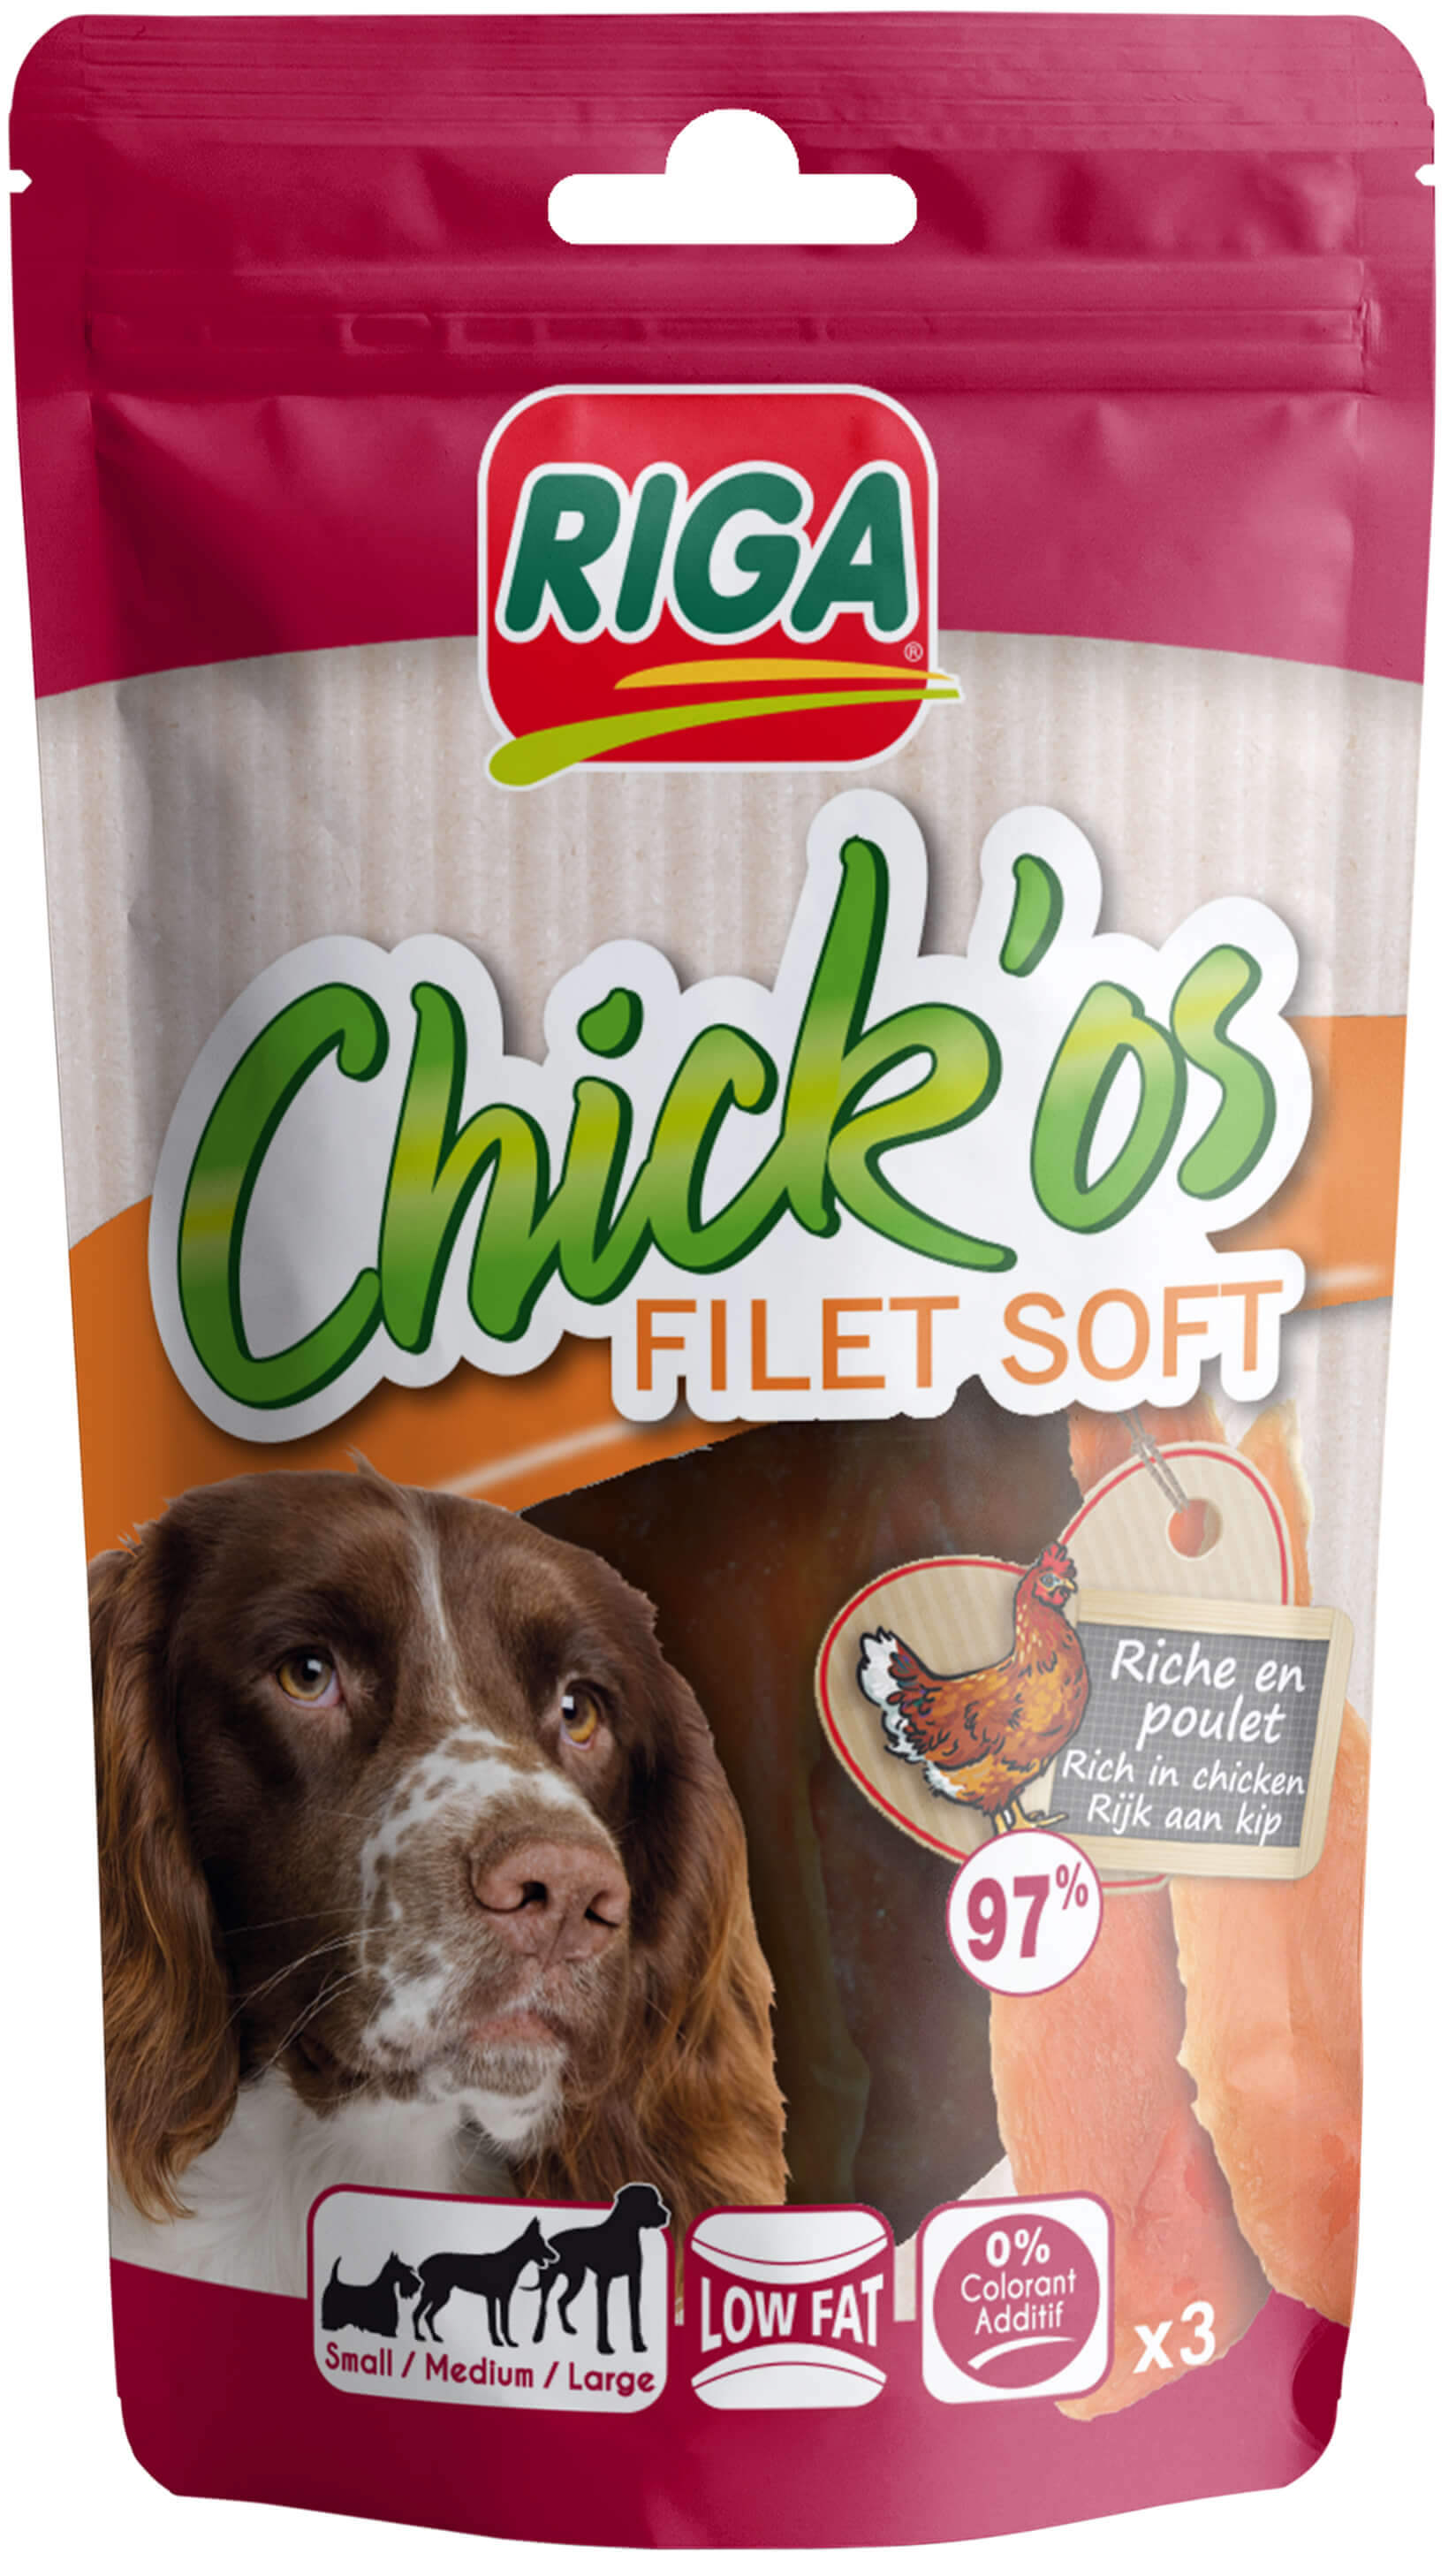 Chick'os Filet Soft